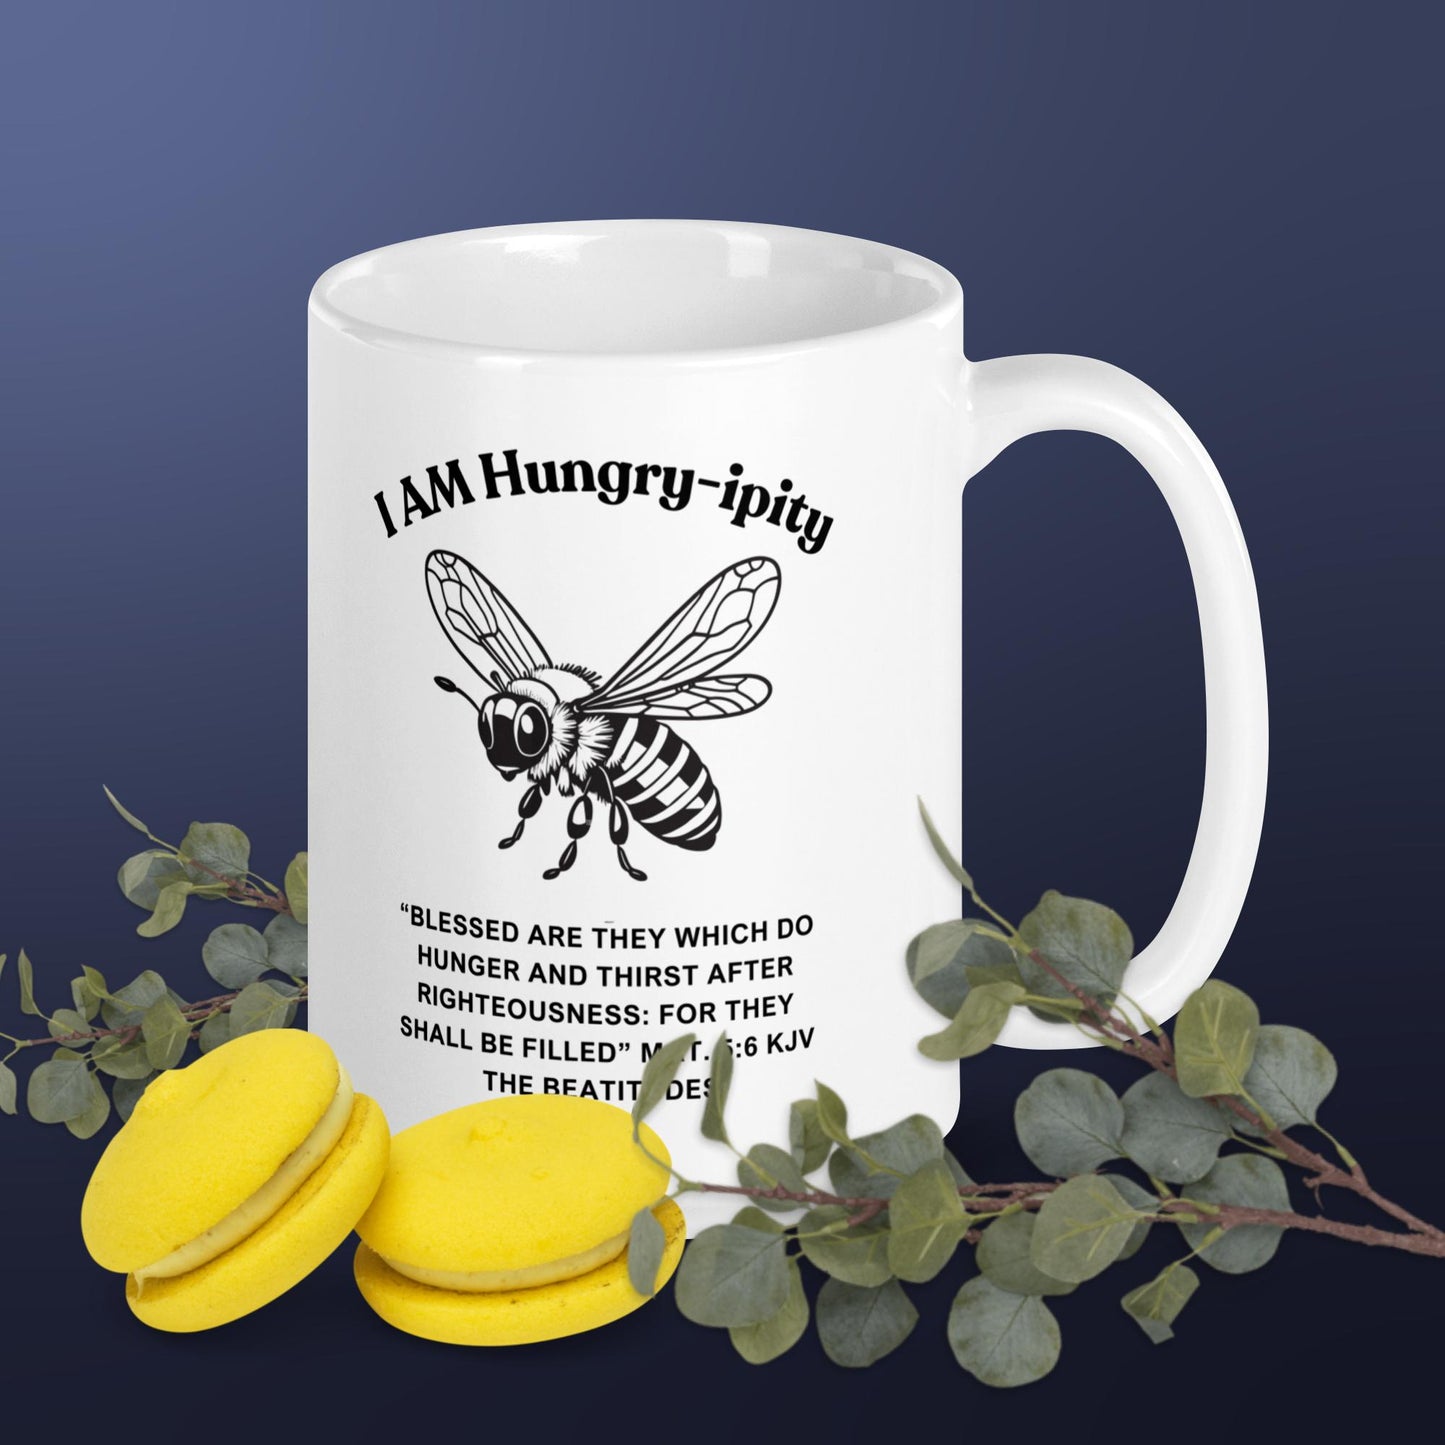 "I AM Hungry-ipity" Coffee Mug B/W